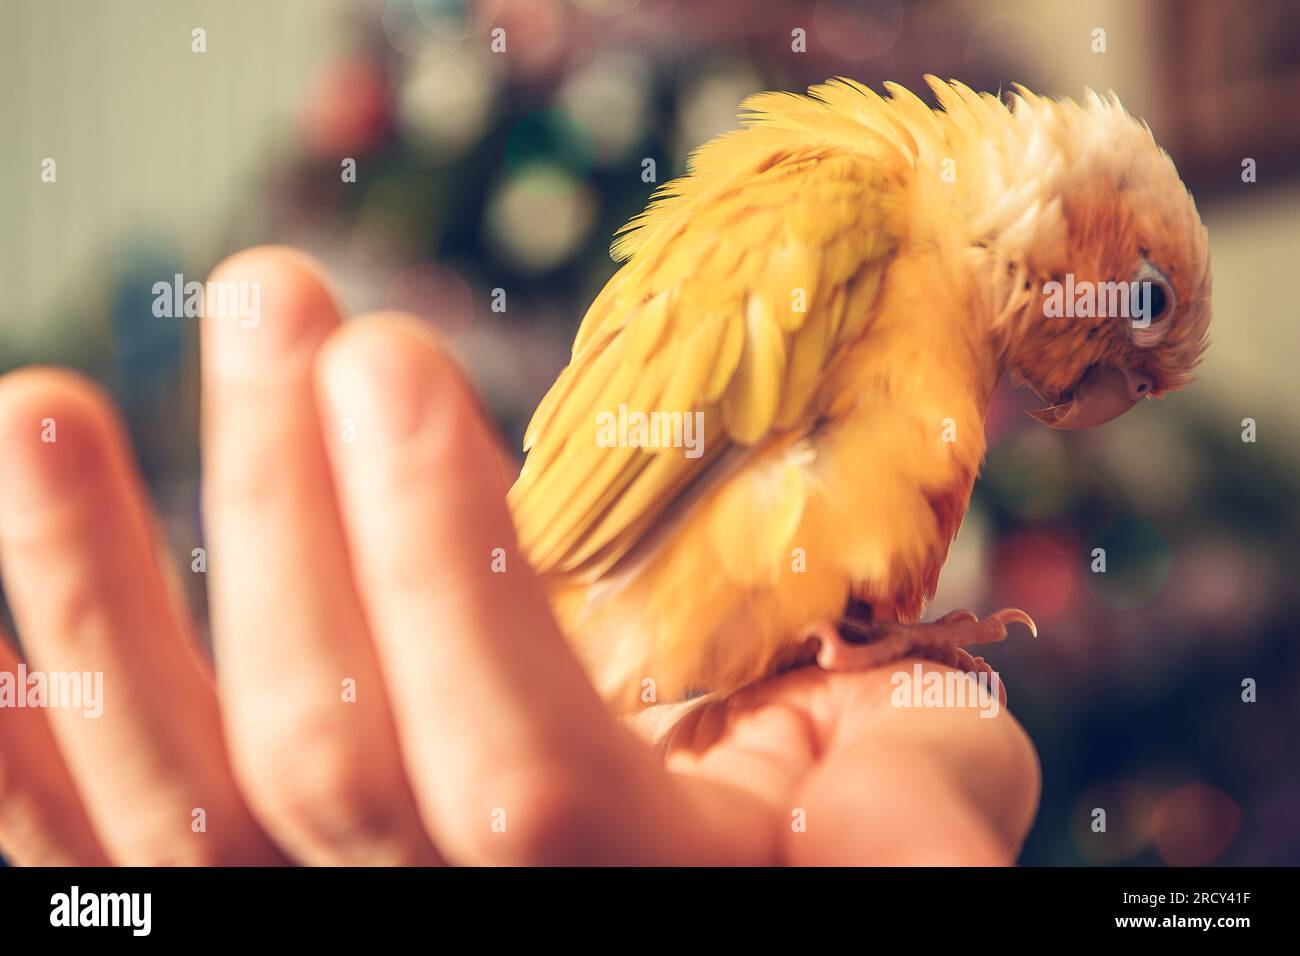 Piccolo pappagallo giallo su una mano del suo proprietario. Tema Animal Lovers. Foto Stock